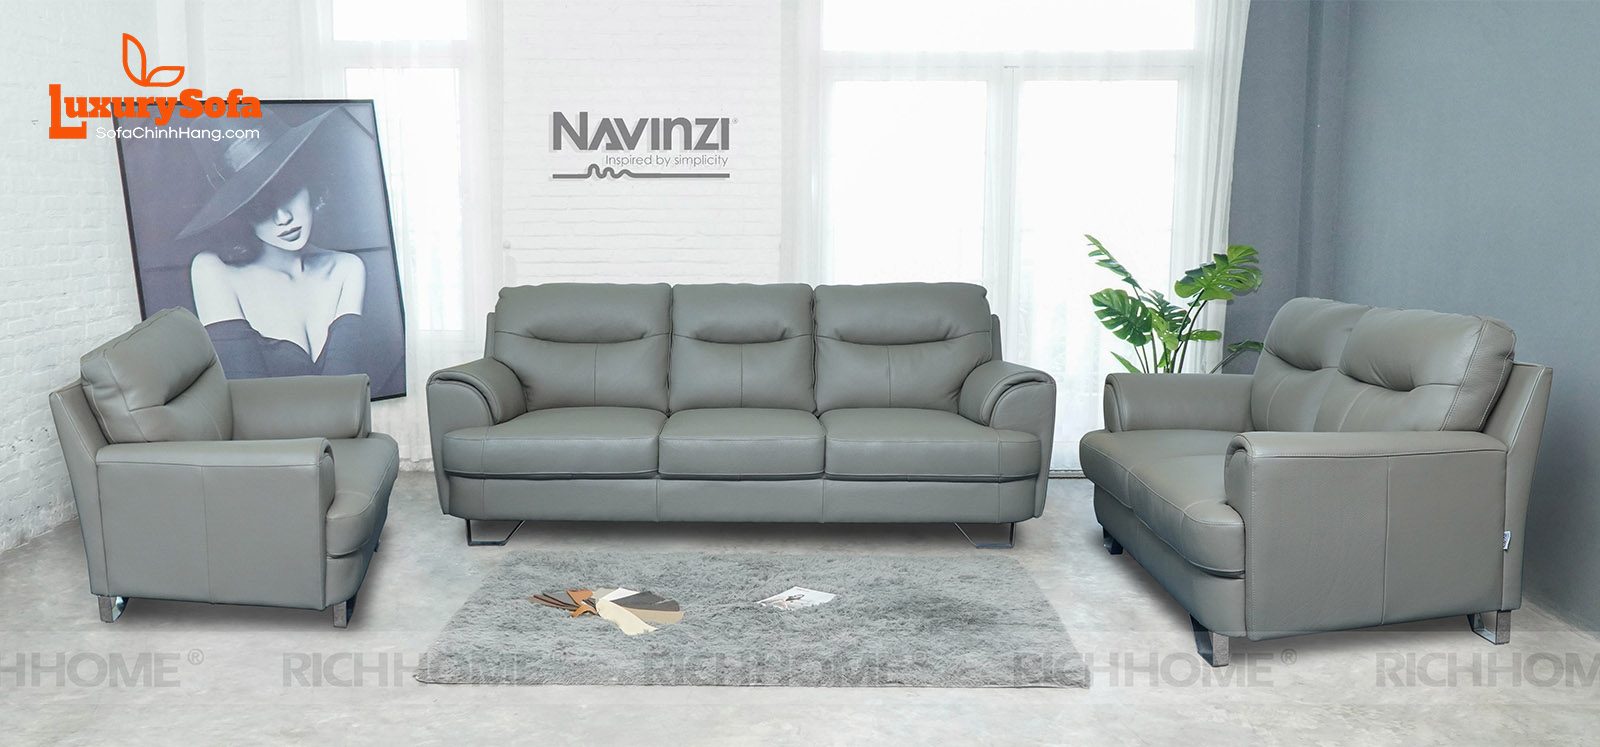 Tổng hợp các mẫu sofa nhập khẩu với nhiều kiểu dáng khác nhau